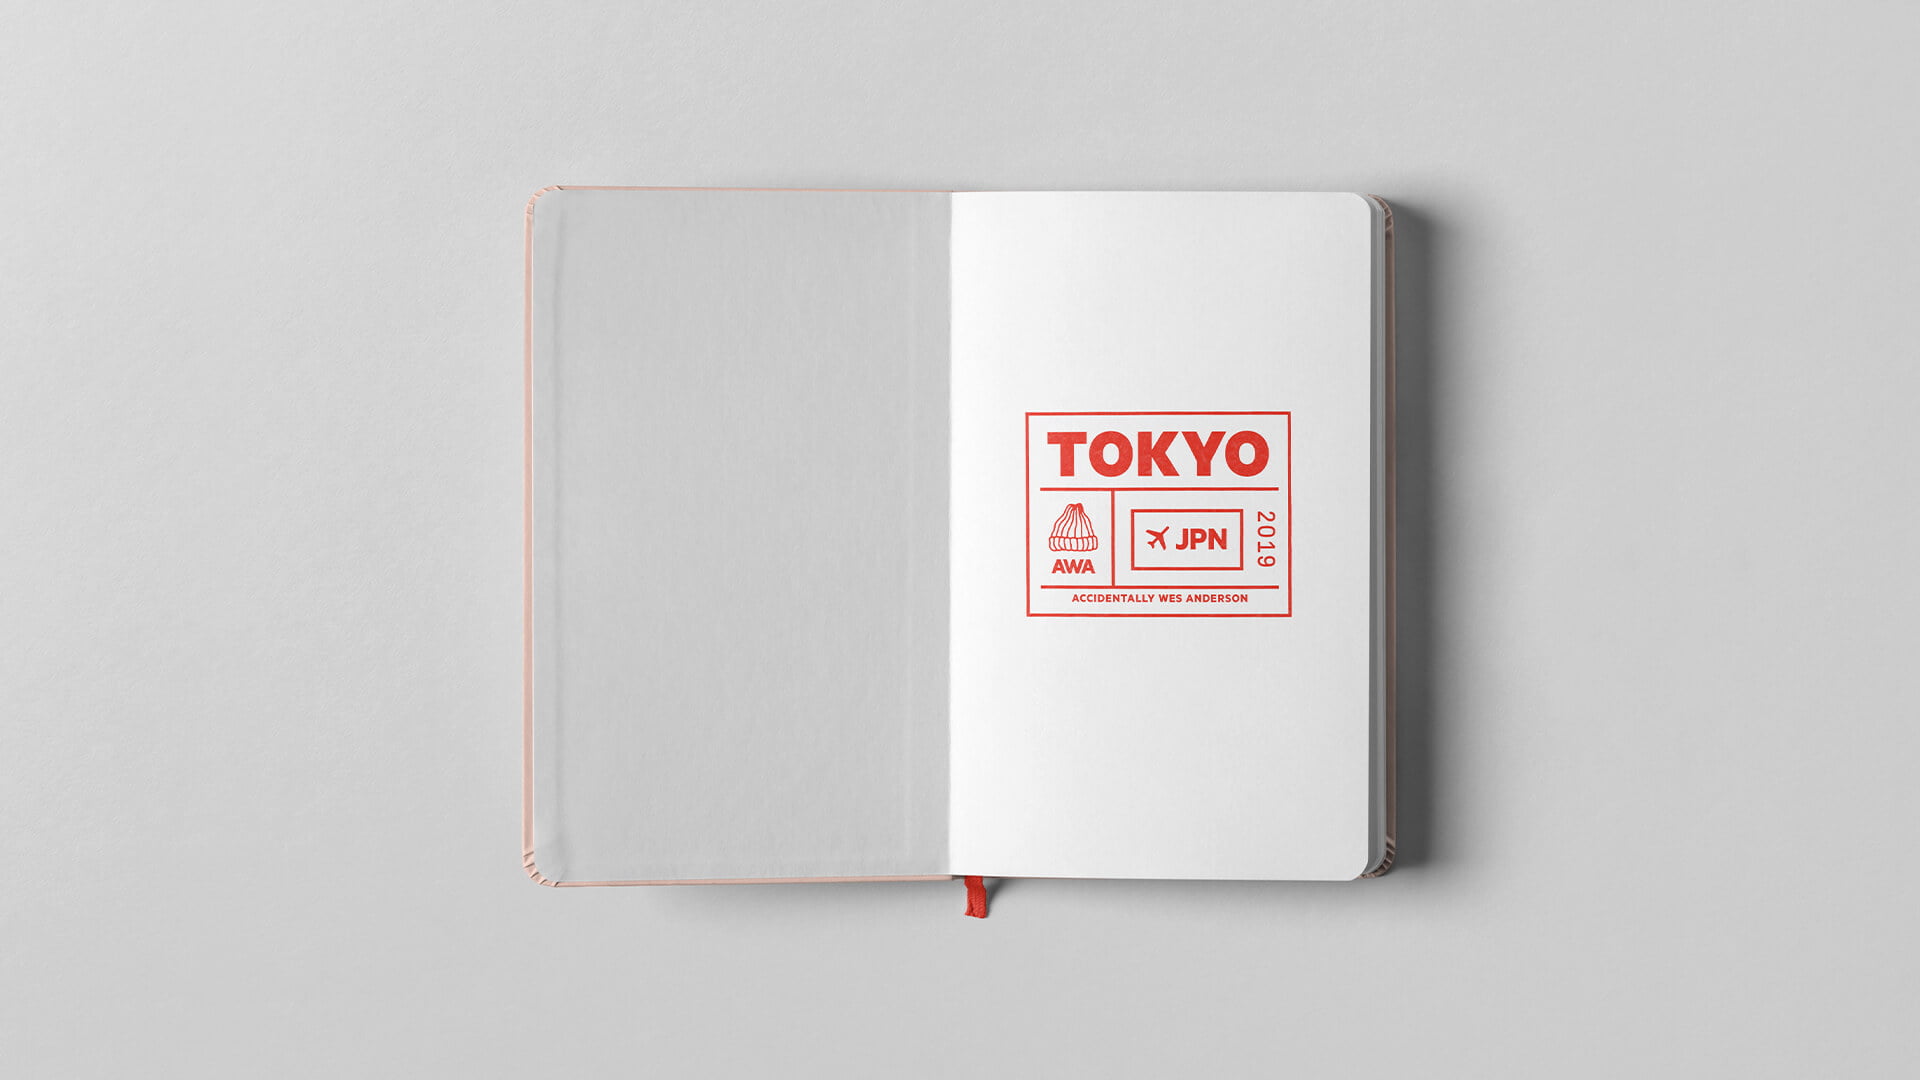 bueno-awa-tokyo-passport-stamp-1